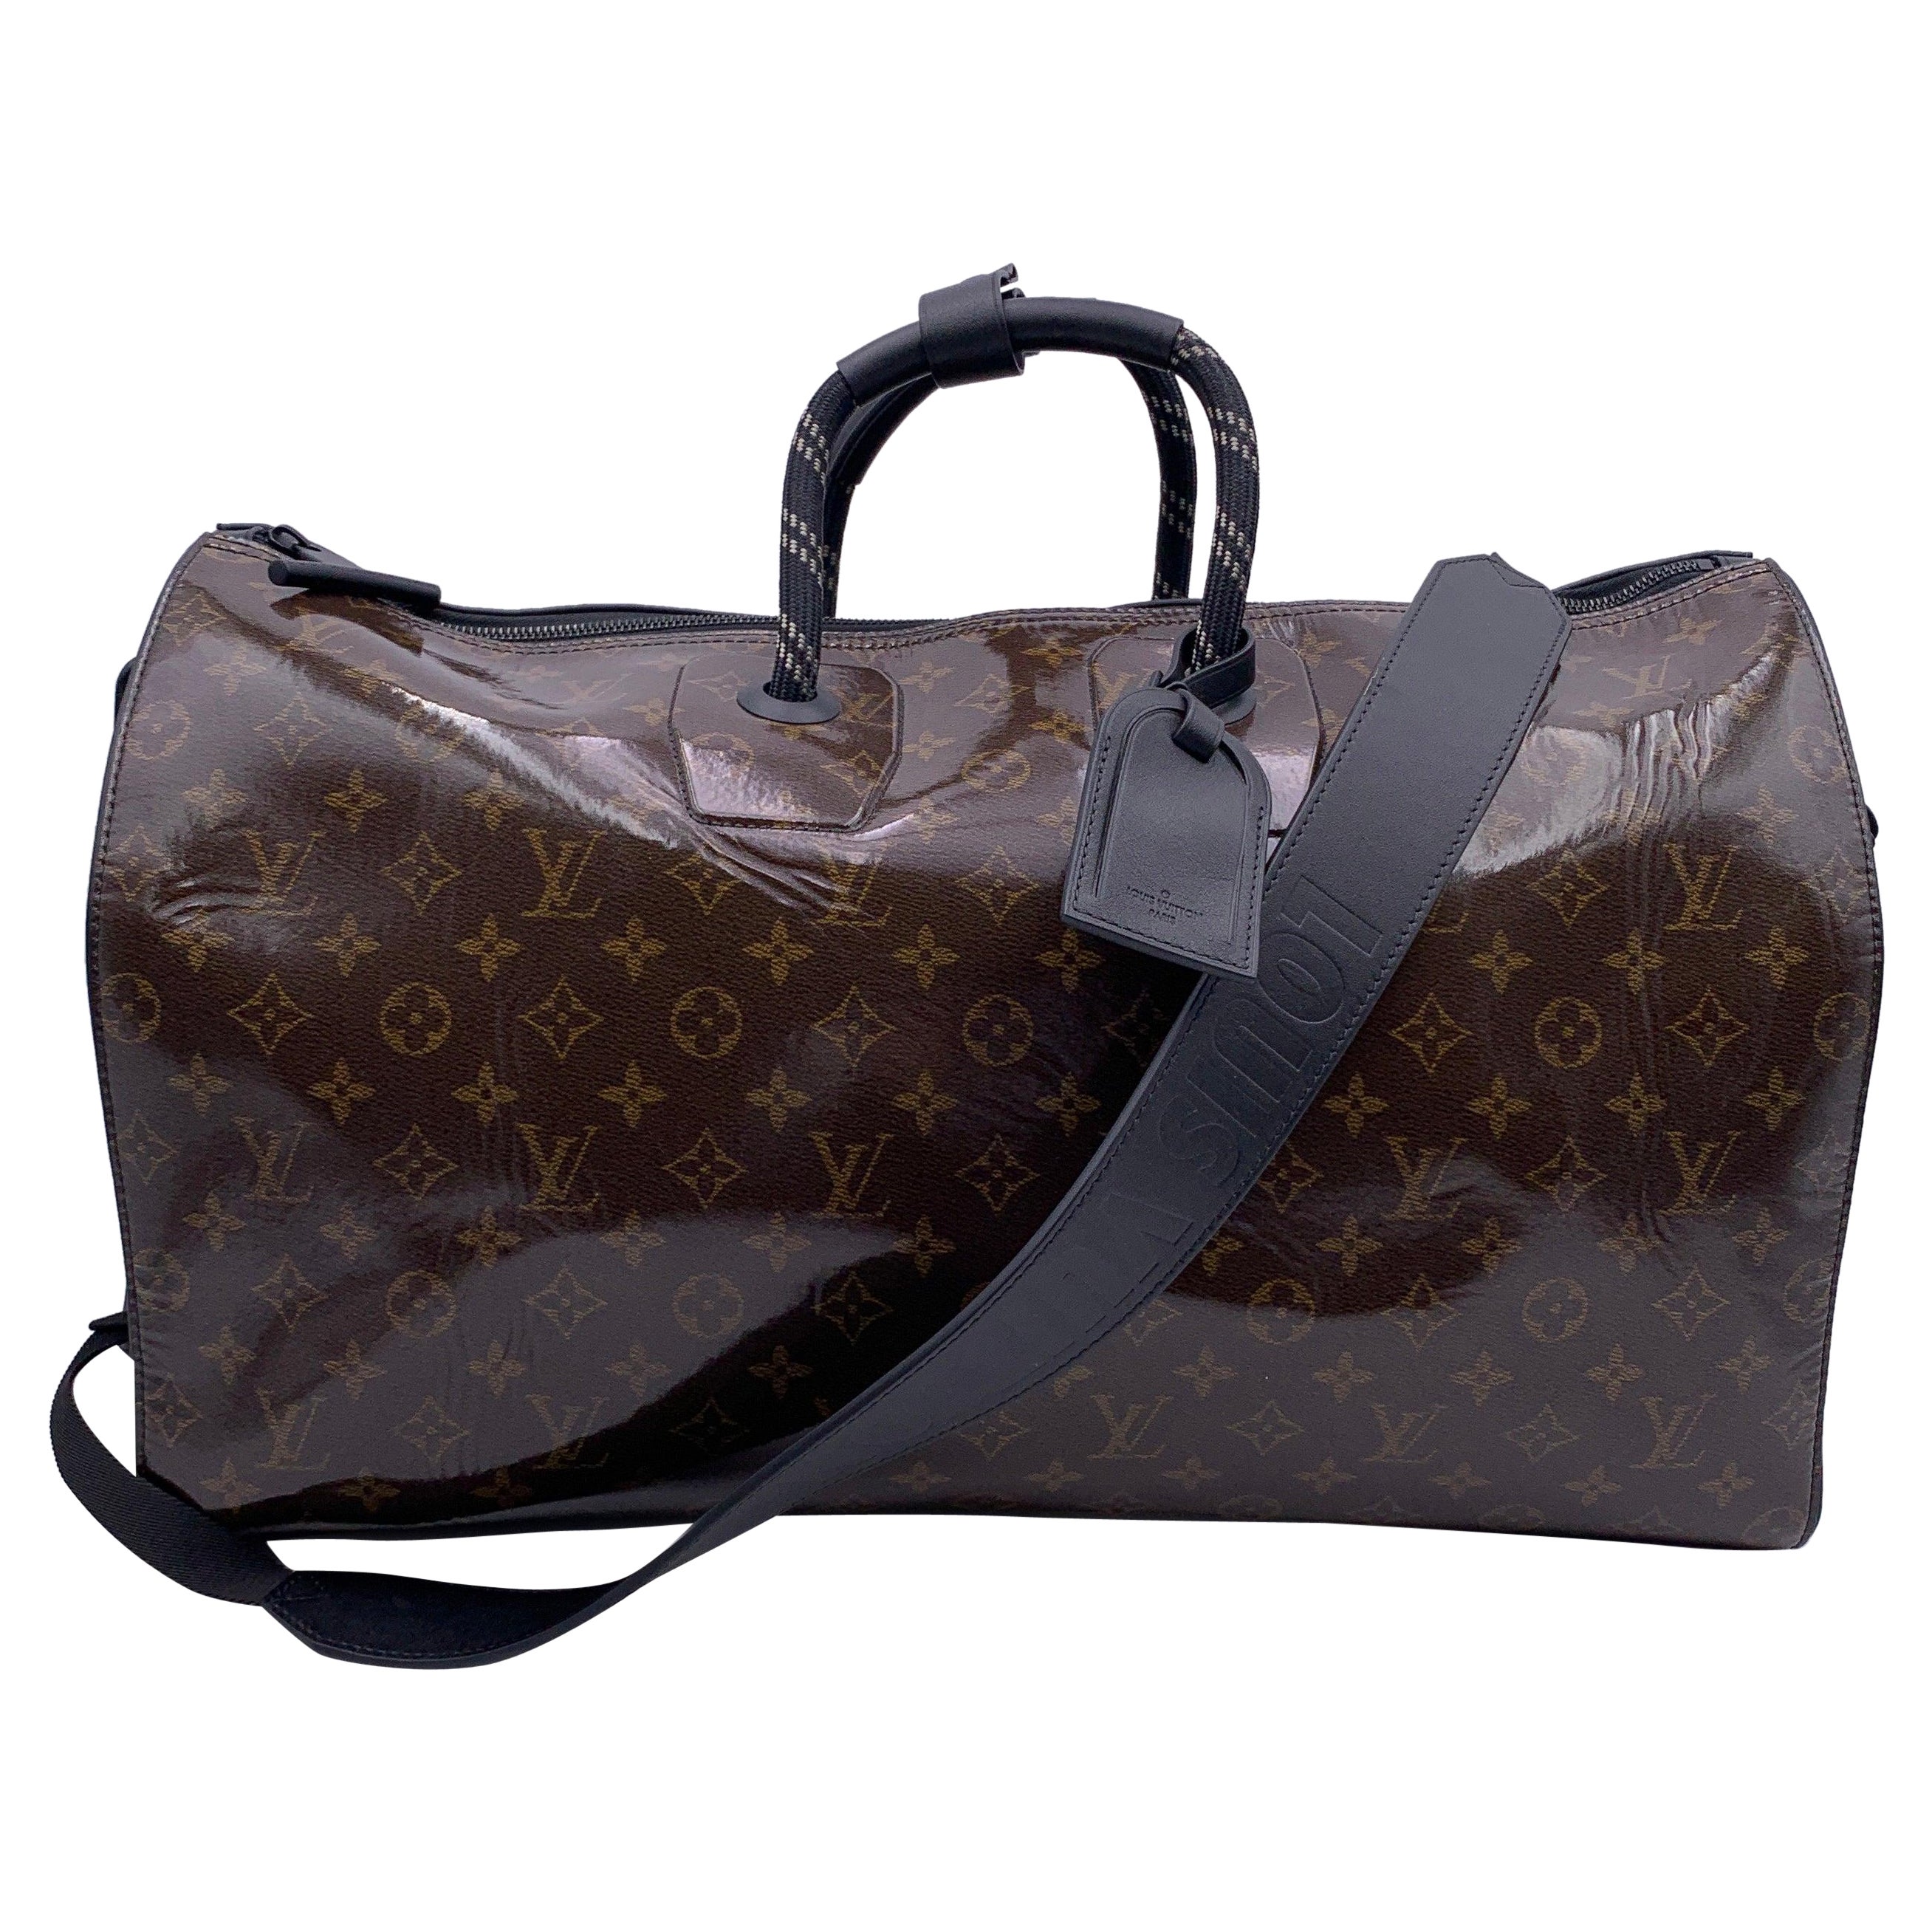 Louis Vuitton Monogram Glaze Keepall Bandouliere 50 Tasche mit Monogramm M43899